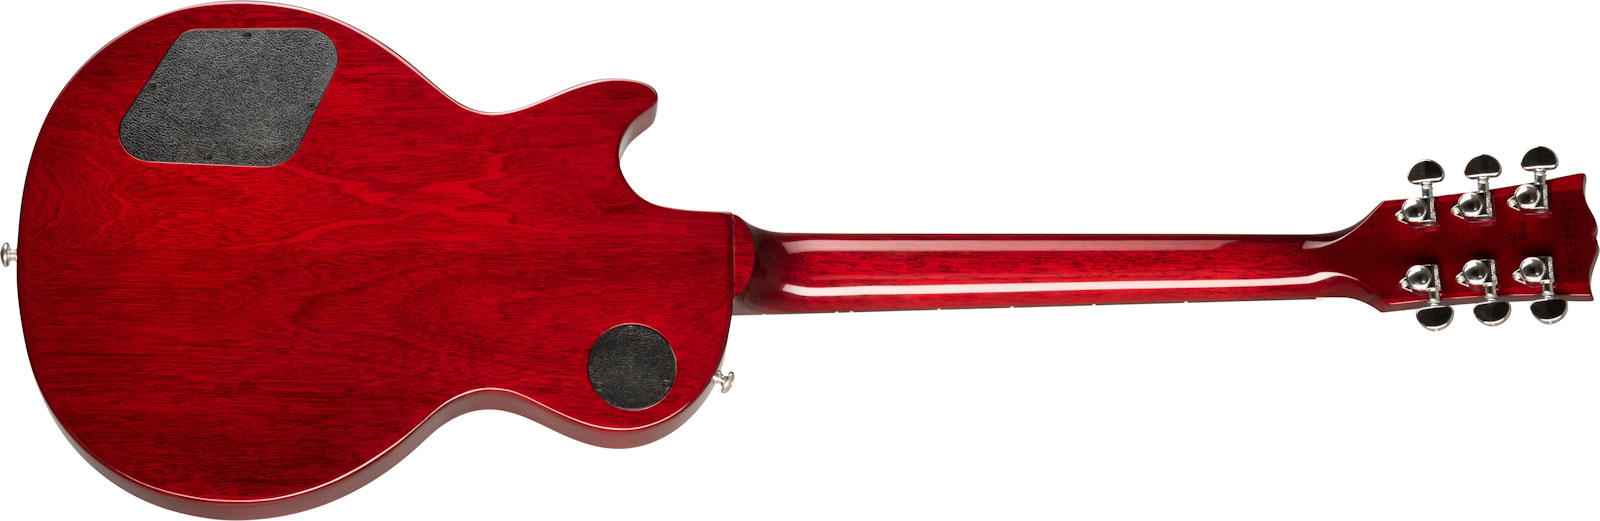 Gibson Les Paul Studio Modern 2020 Lh Gaucher 2h Ht Rw - Wine Red - Guitarra electrica para zurdos - Variation 1